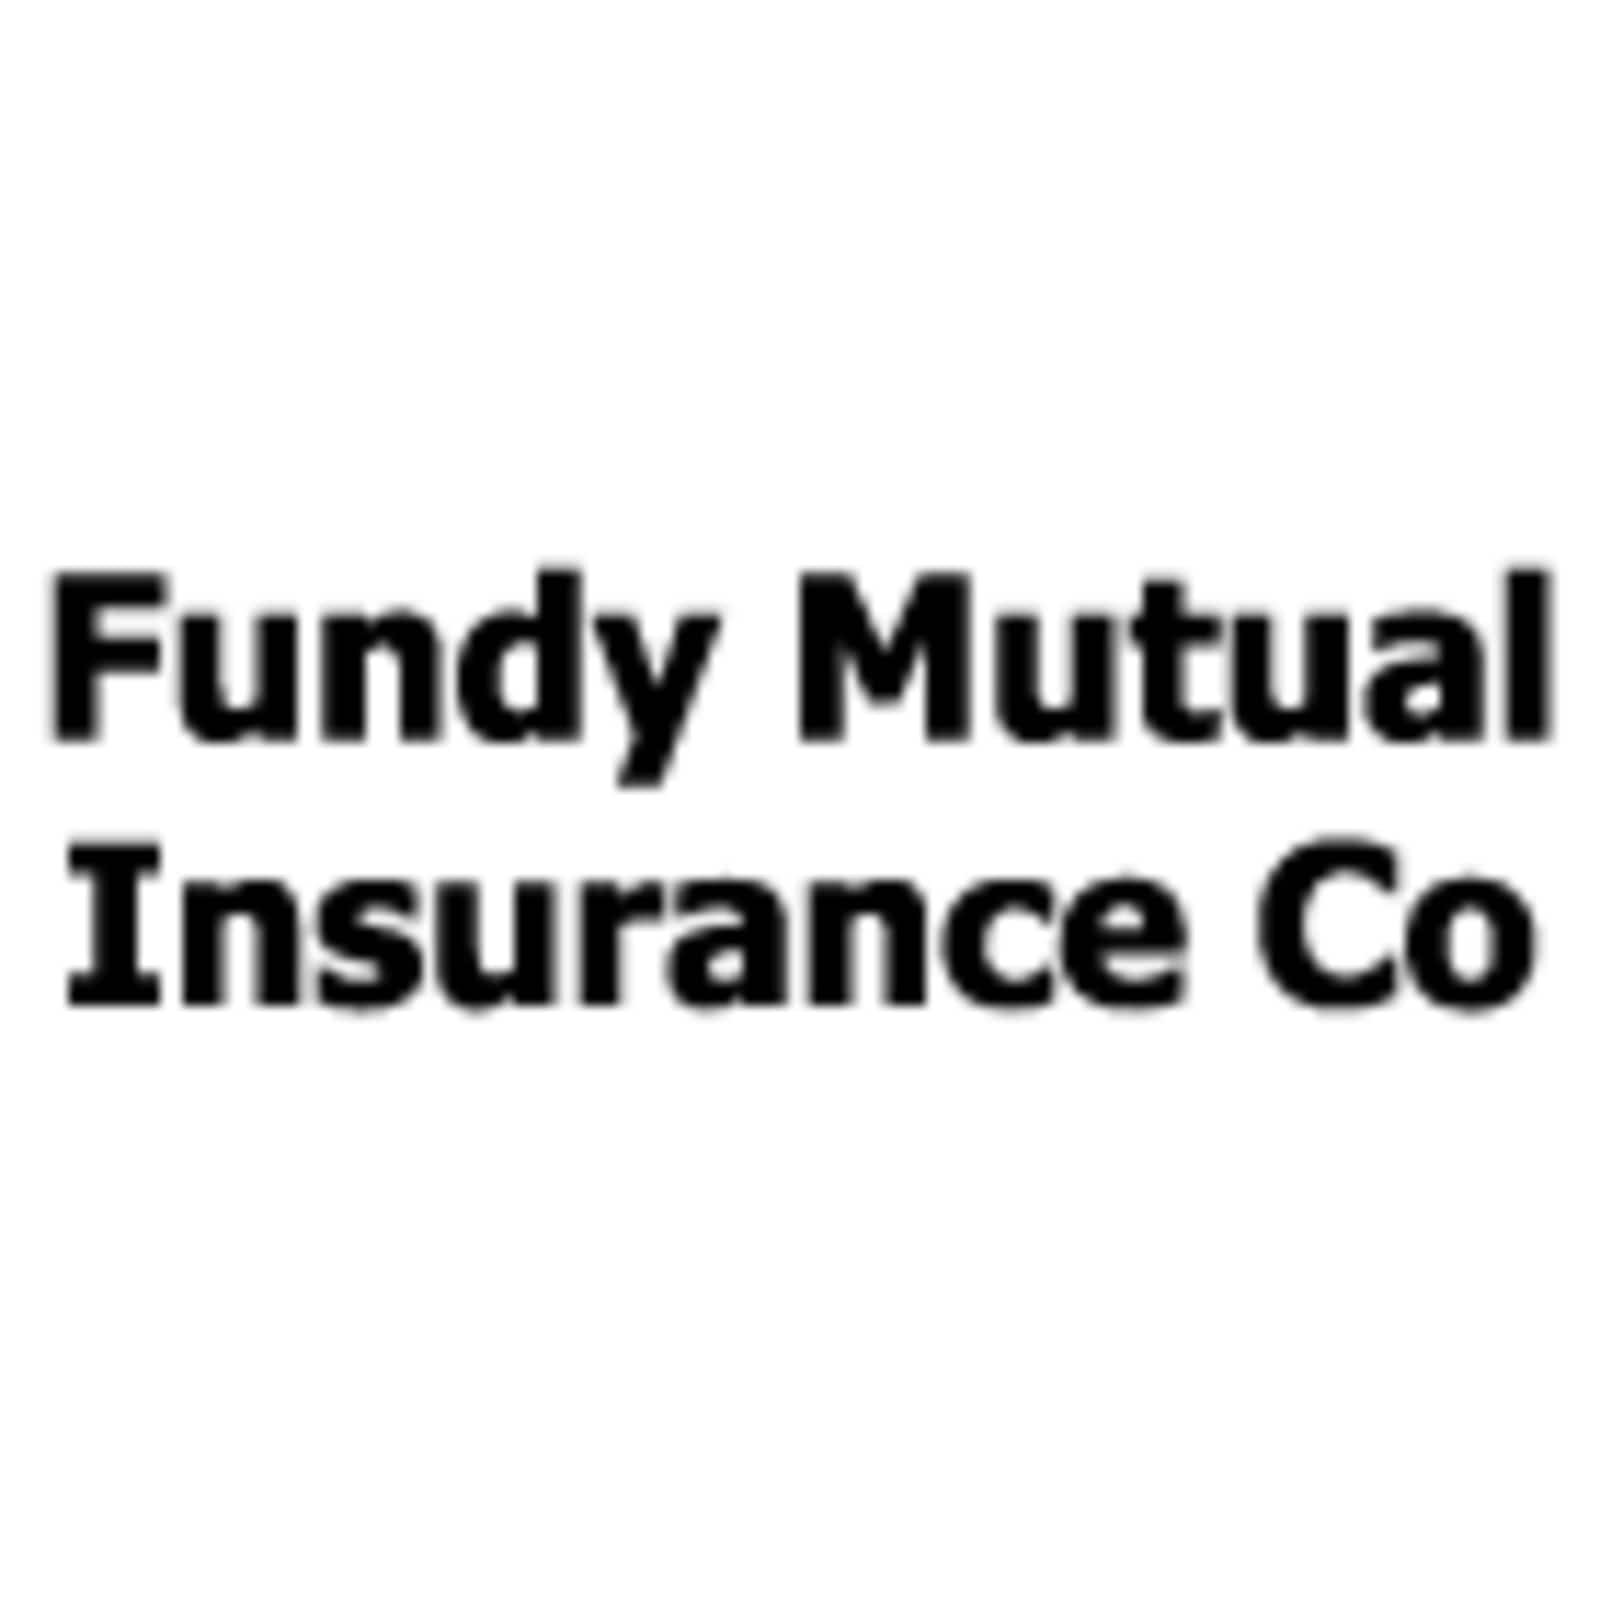 Fundy Mutual Insurance Co